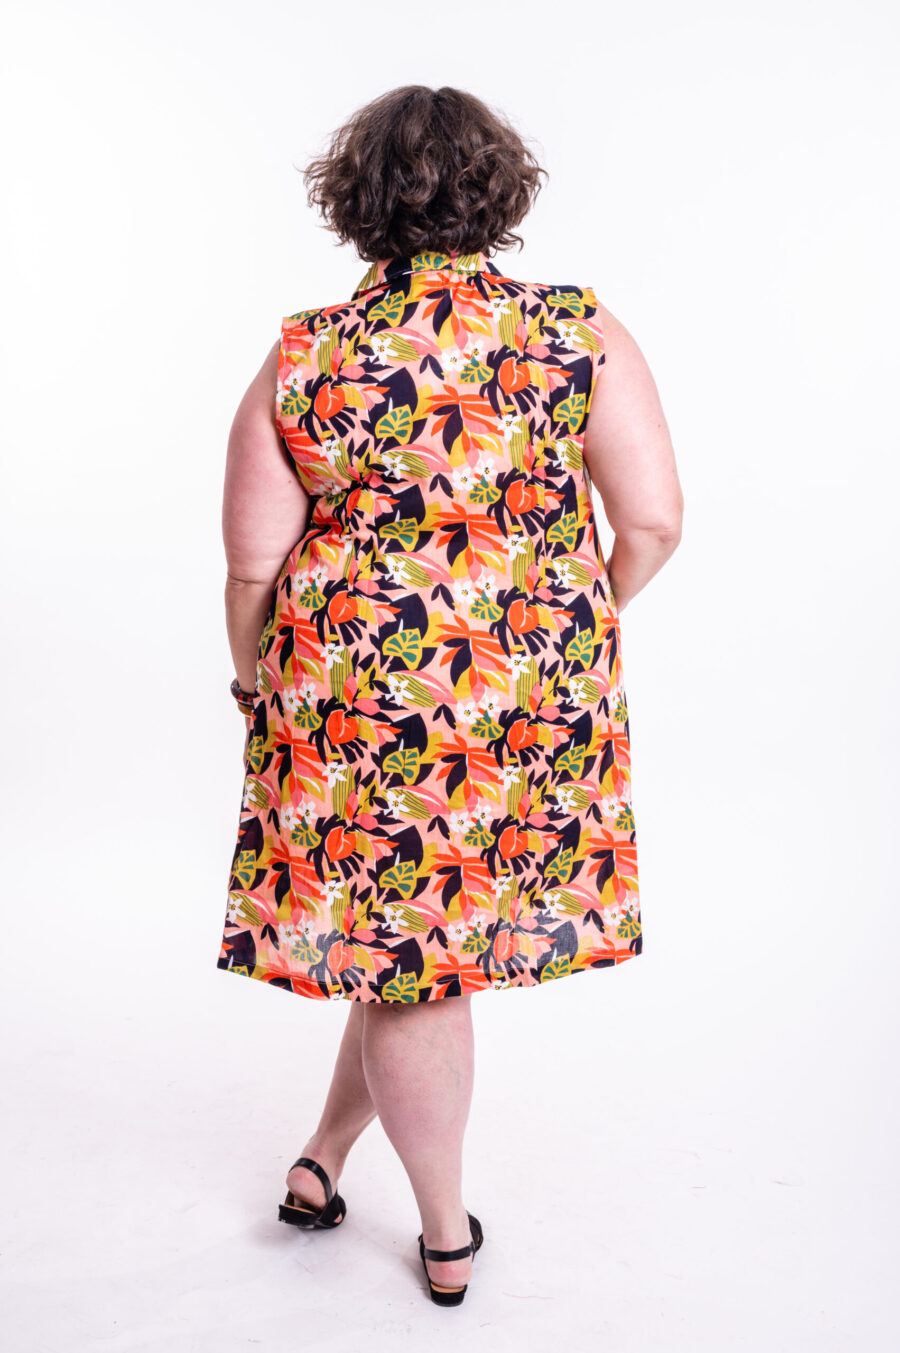 שמלת עופר | שמלה בעיצוב ייחודי – שמלת מידי צבעונית עם הדפס שקיעה טרופית